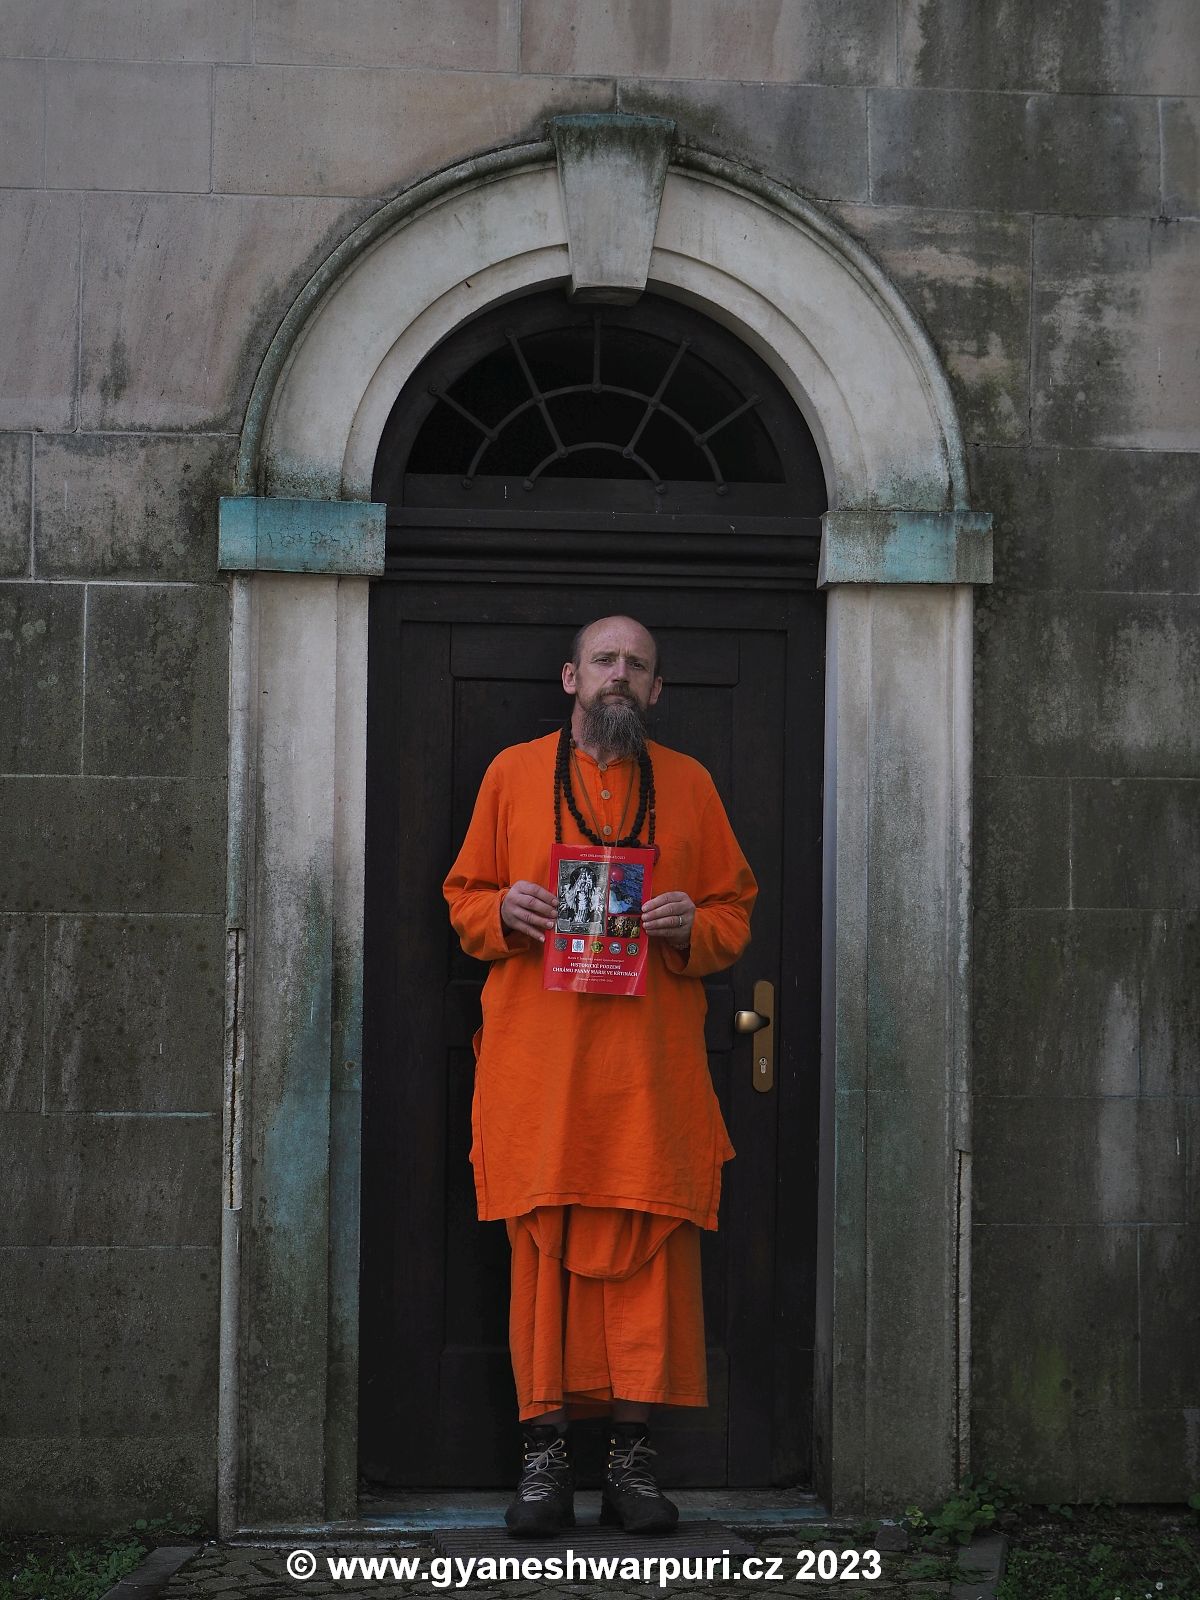 Svámí Gyaneshwarpuri drží Acta Speleohistorica Křtiny před vchodem do krypty chrámu Panny Marie ve Křtinách. Foto: Jiří Dressler 2023